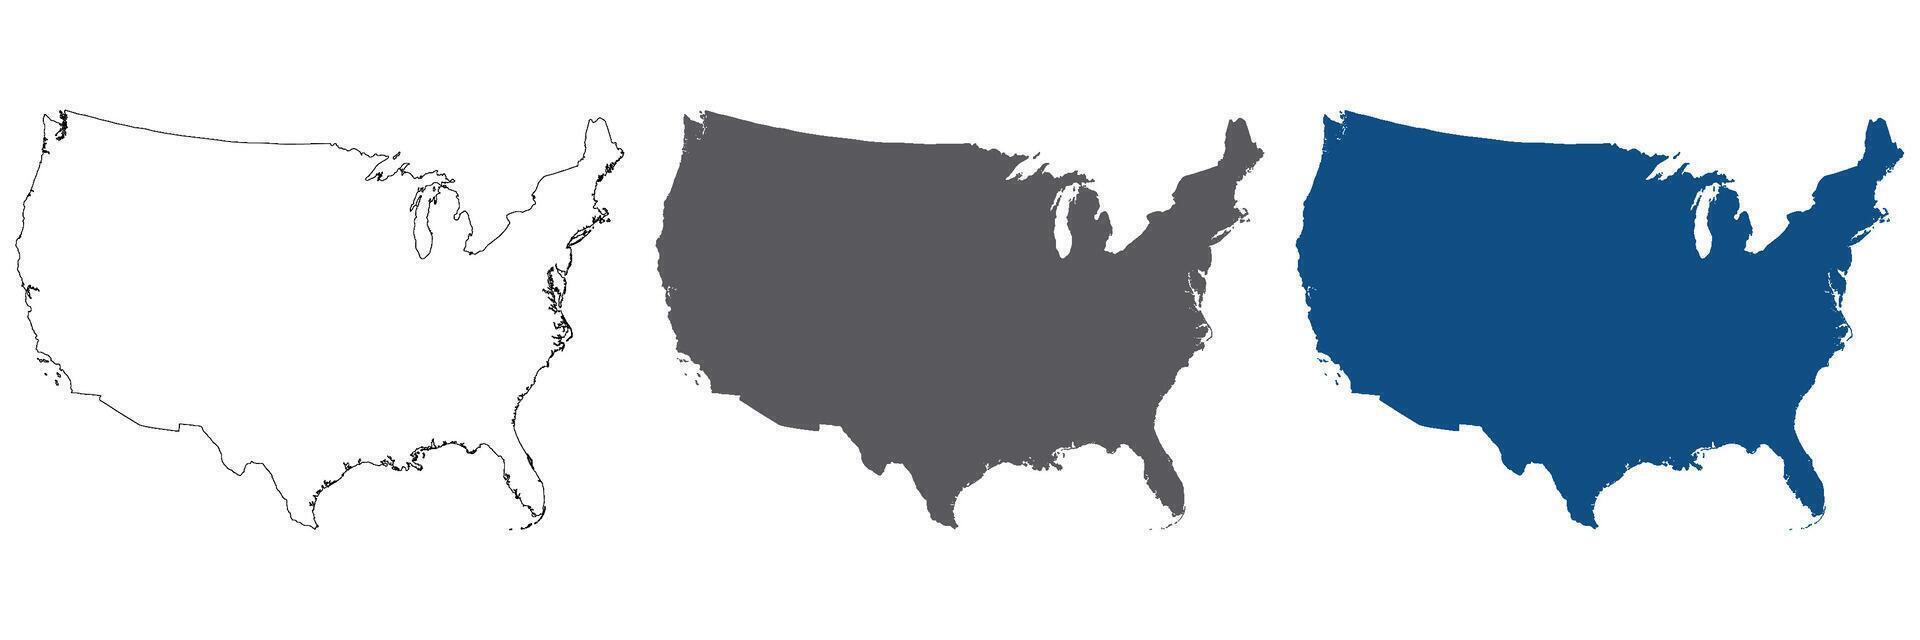 USA Karta, Amerika Karta, förenad stater av Amerika Karta i uppsättning. vektor